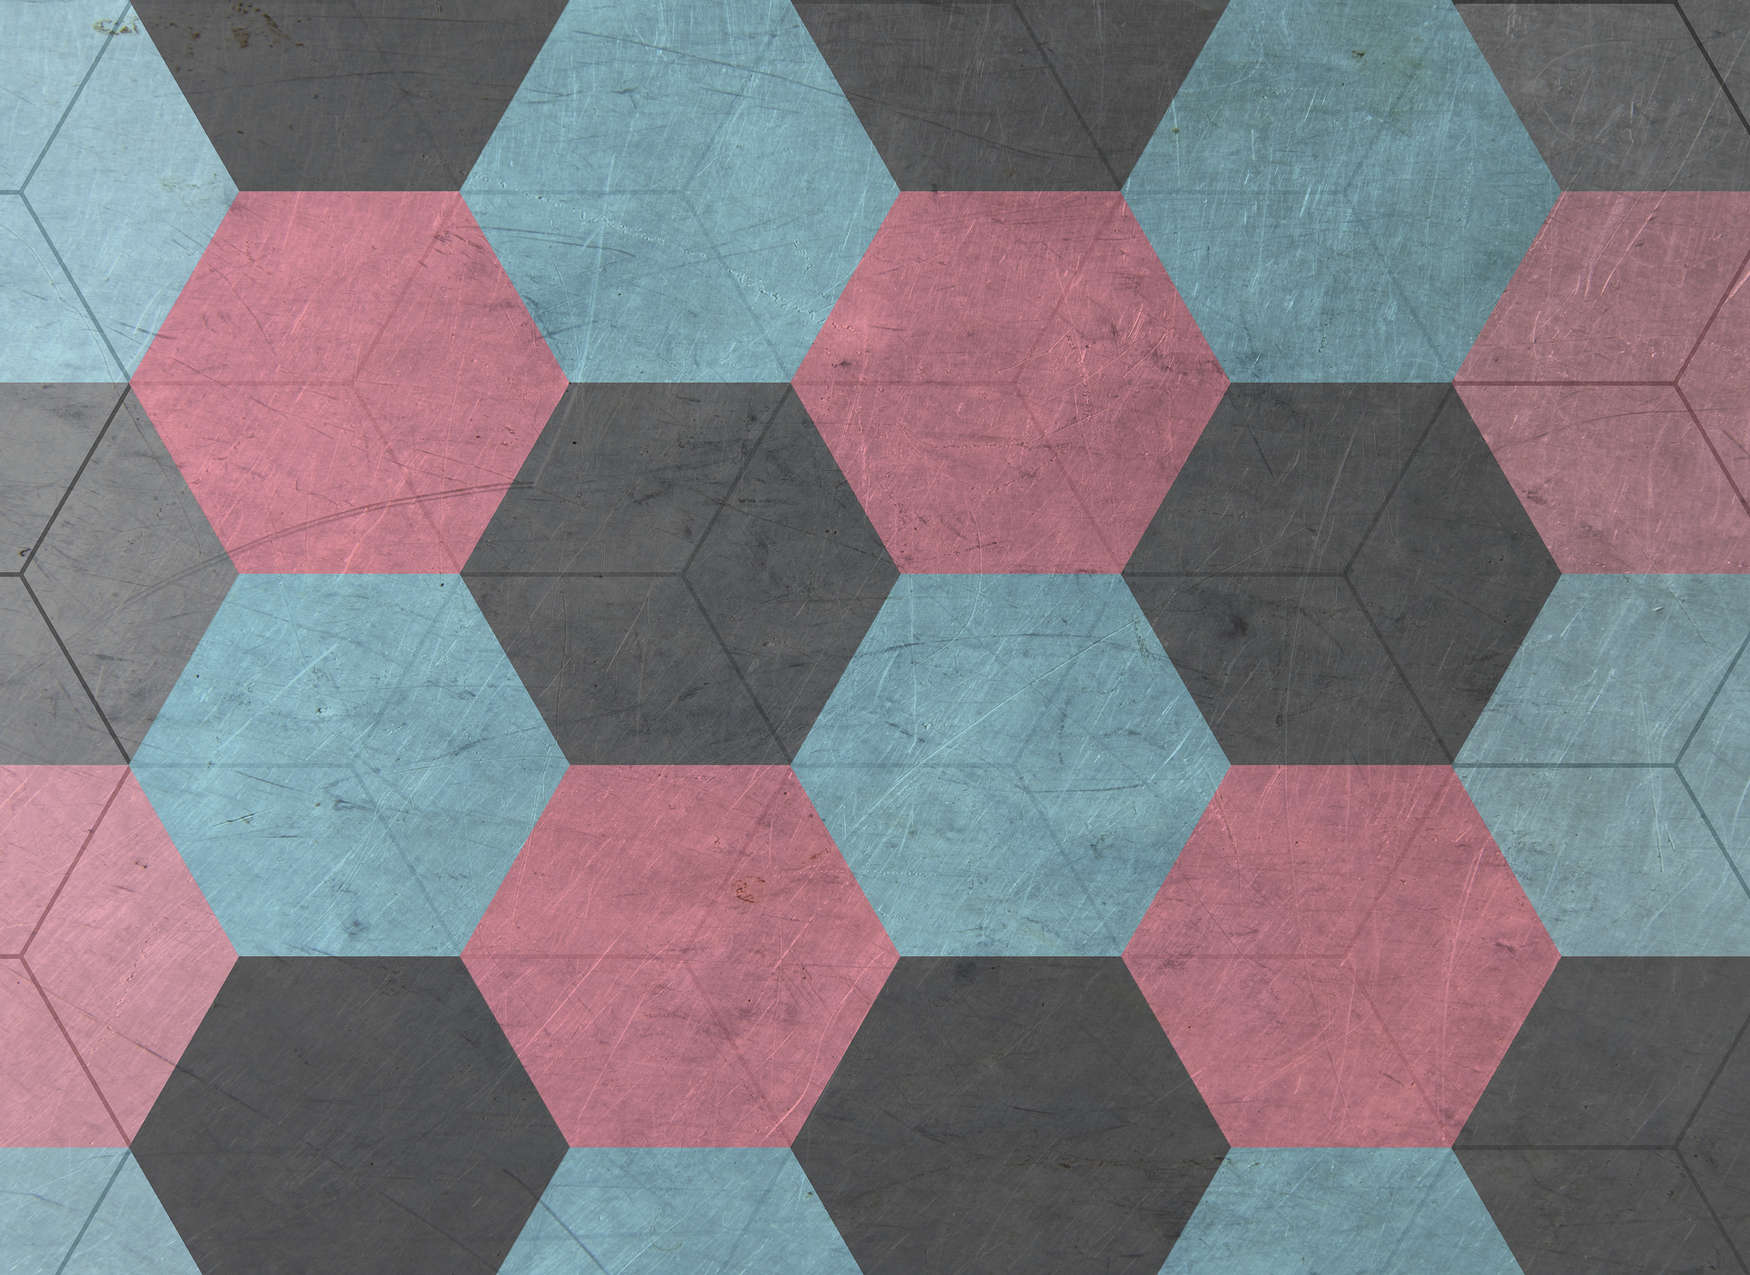             Vintage Look Hexagon Tiles Wallpaper - Blauw, Rood, Zwart
        